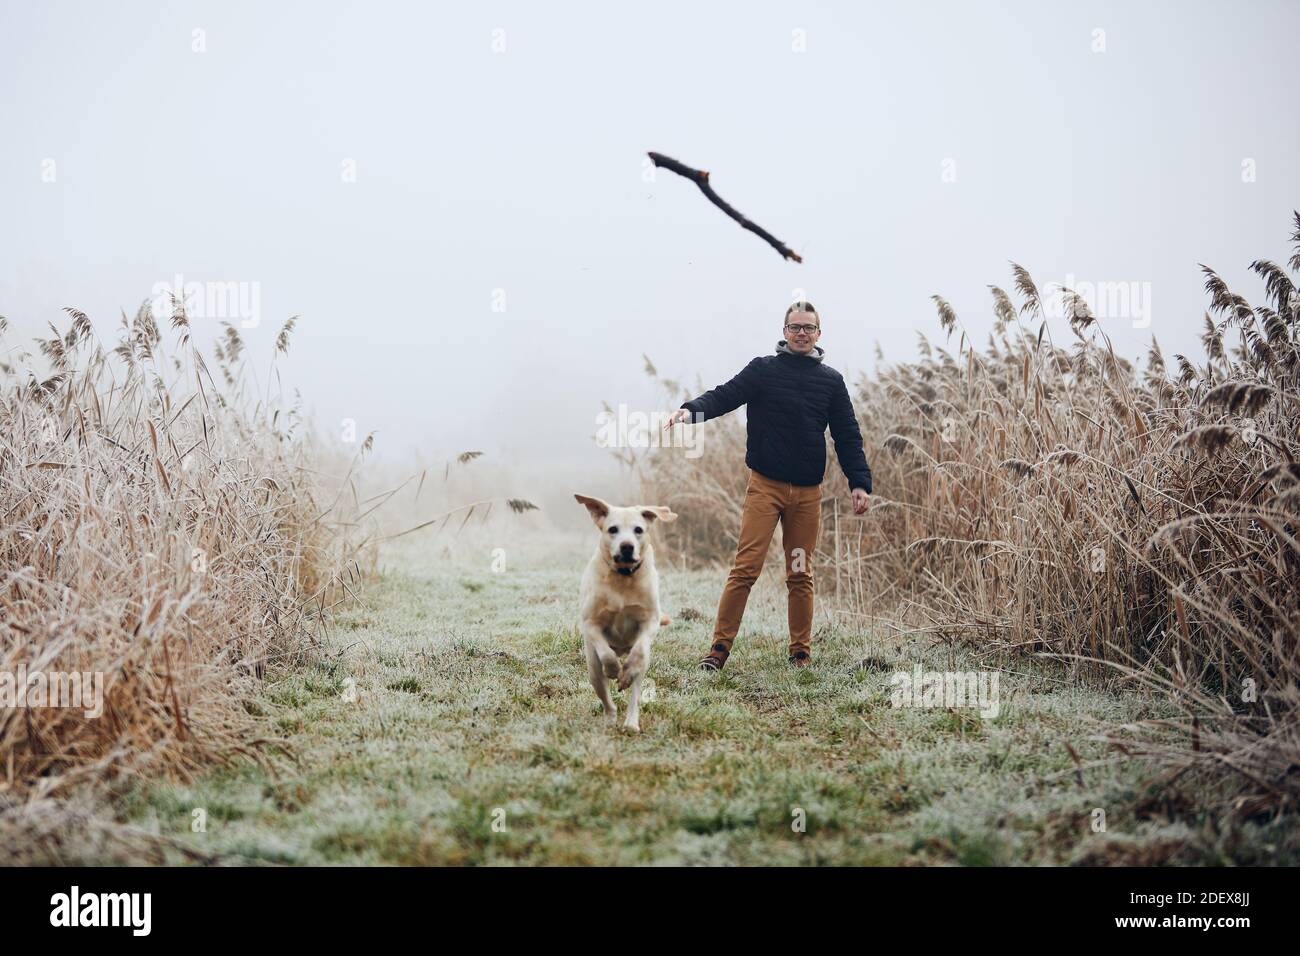 Mann wirft Stock für seinen Hund. Haustierbesitzer mit labrador Retriver spielen während des nebligen Herbsttages. Stockfoto